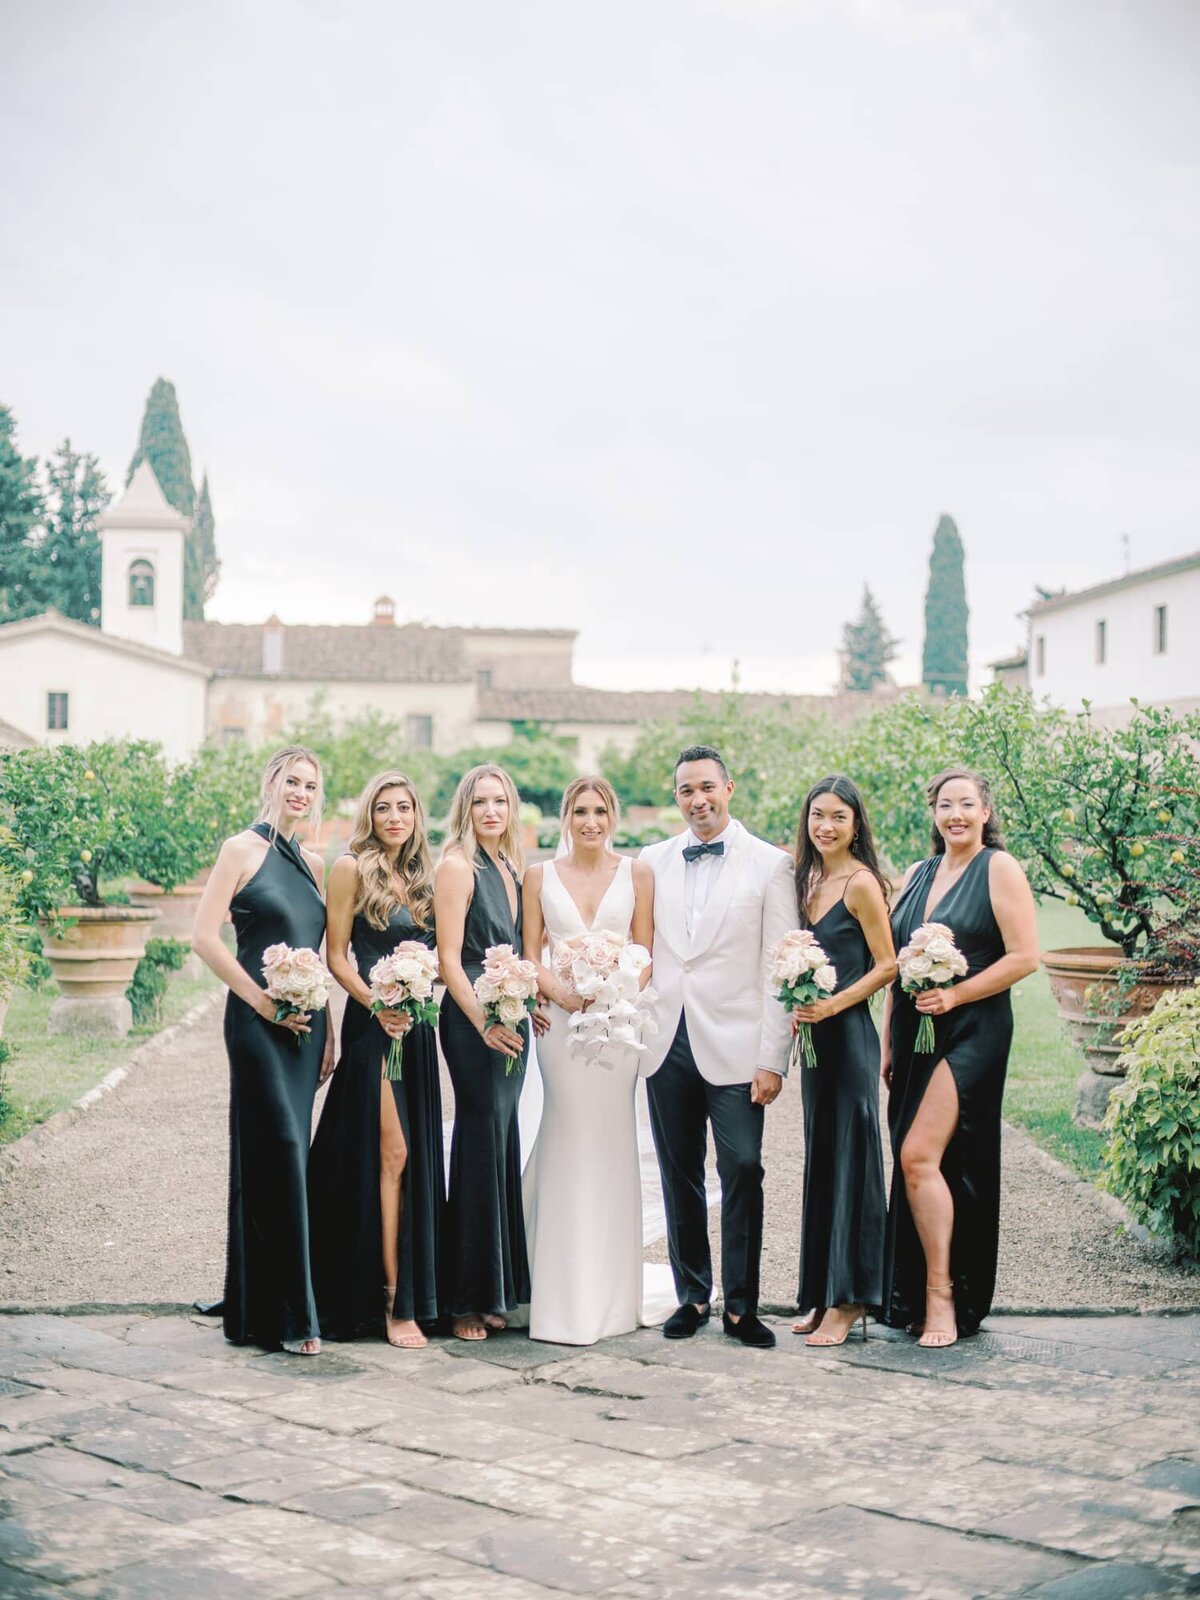 AndreasKGeorgiou-Tuscany-wedding-Italy-52